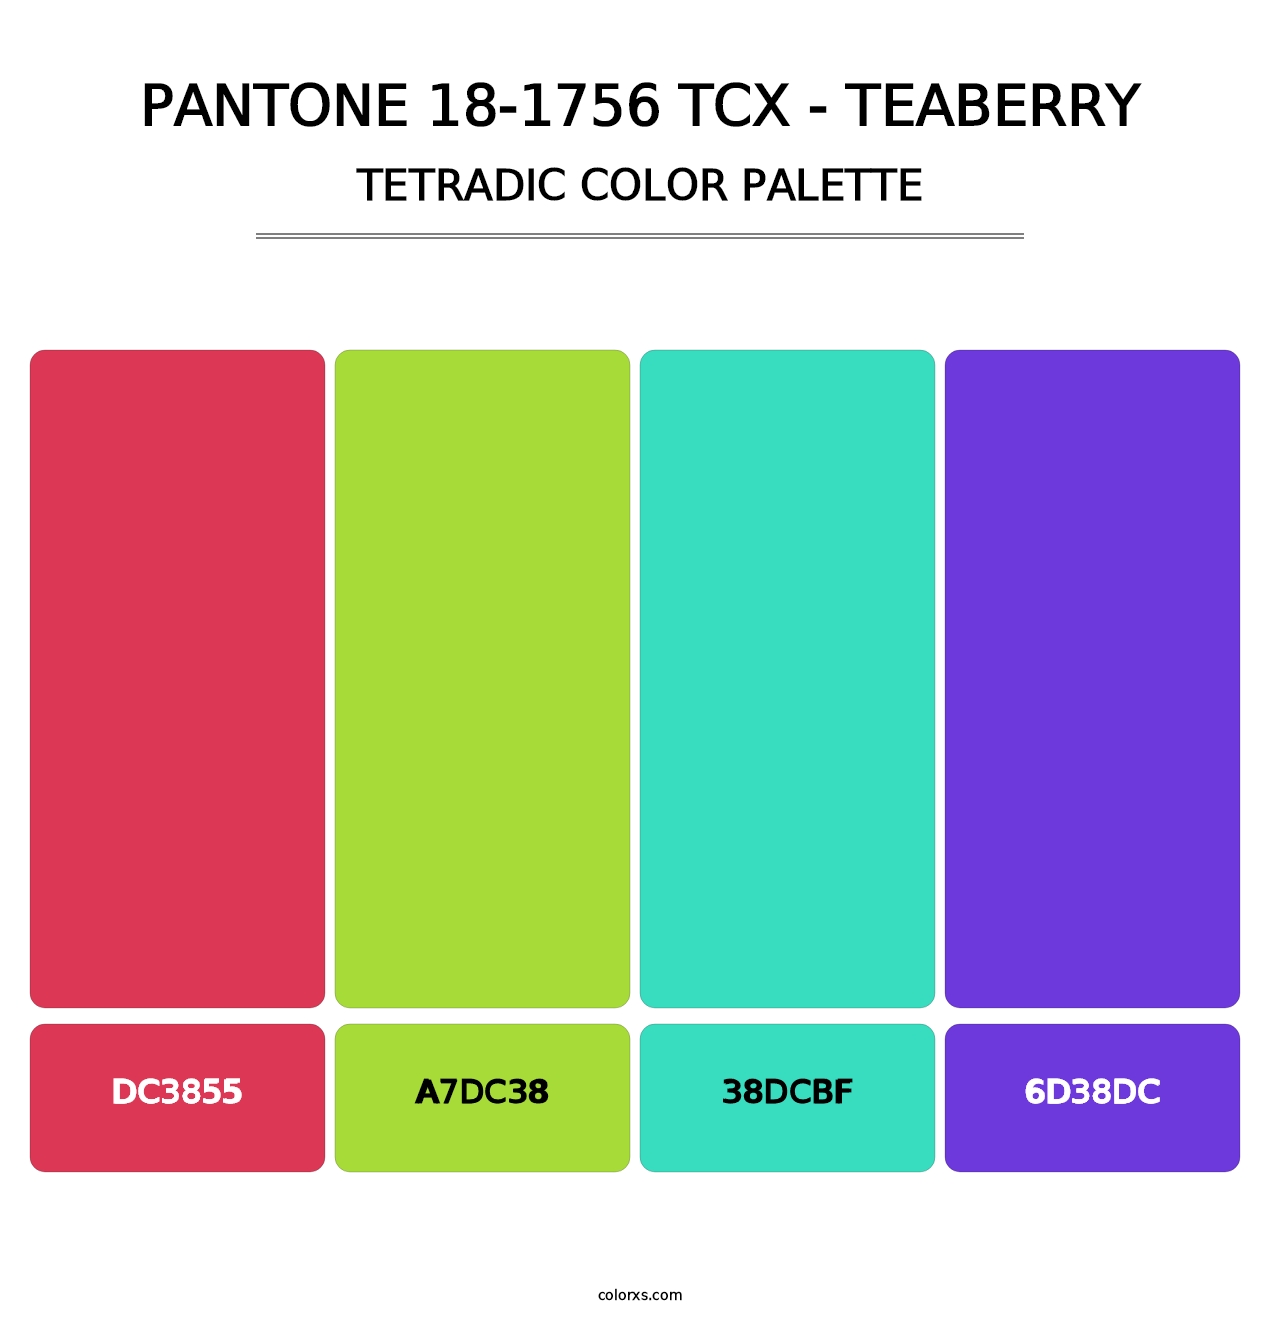 PANTONE 18-1756 TCX - Teaberry - Tetradic Color Palette